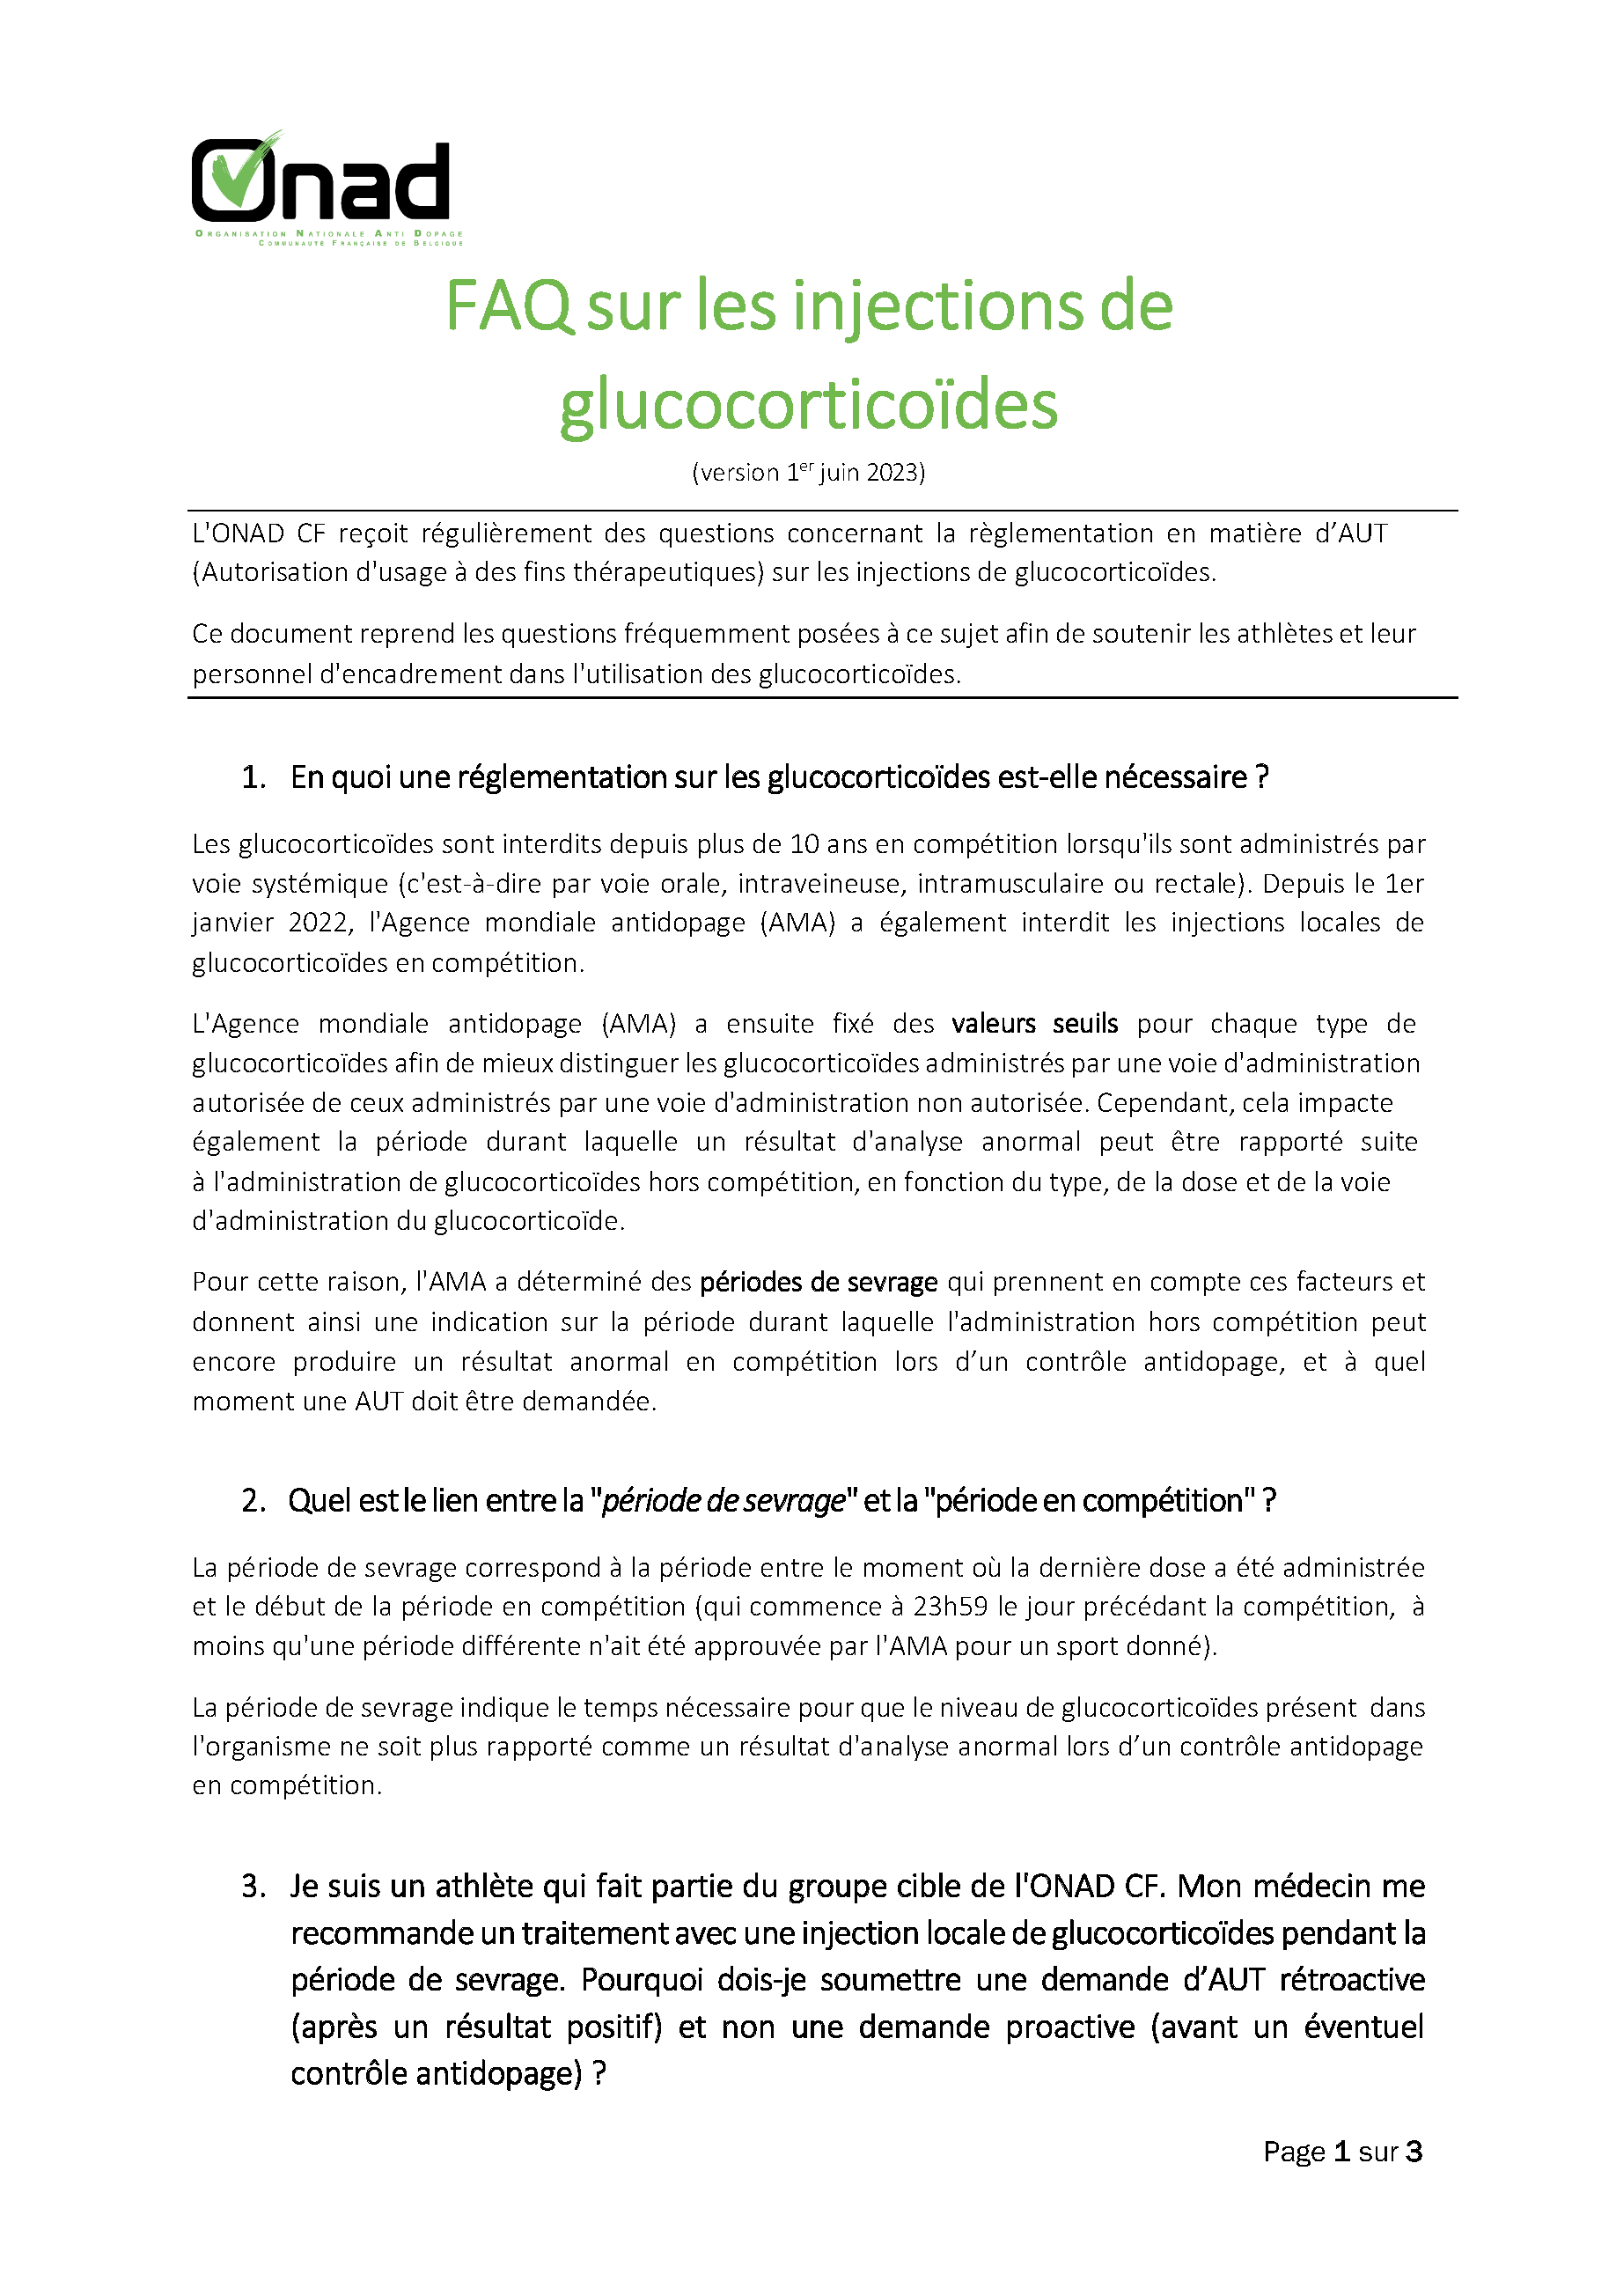 Fiche FAQ glucocorticoïdes